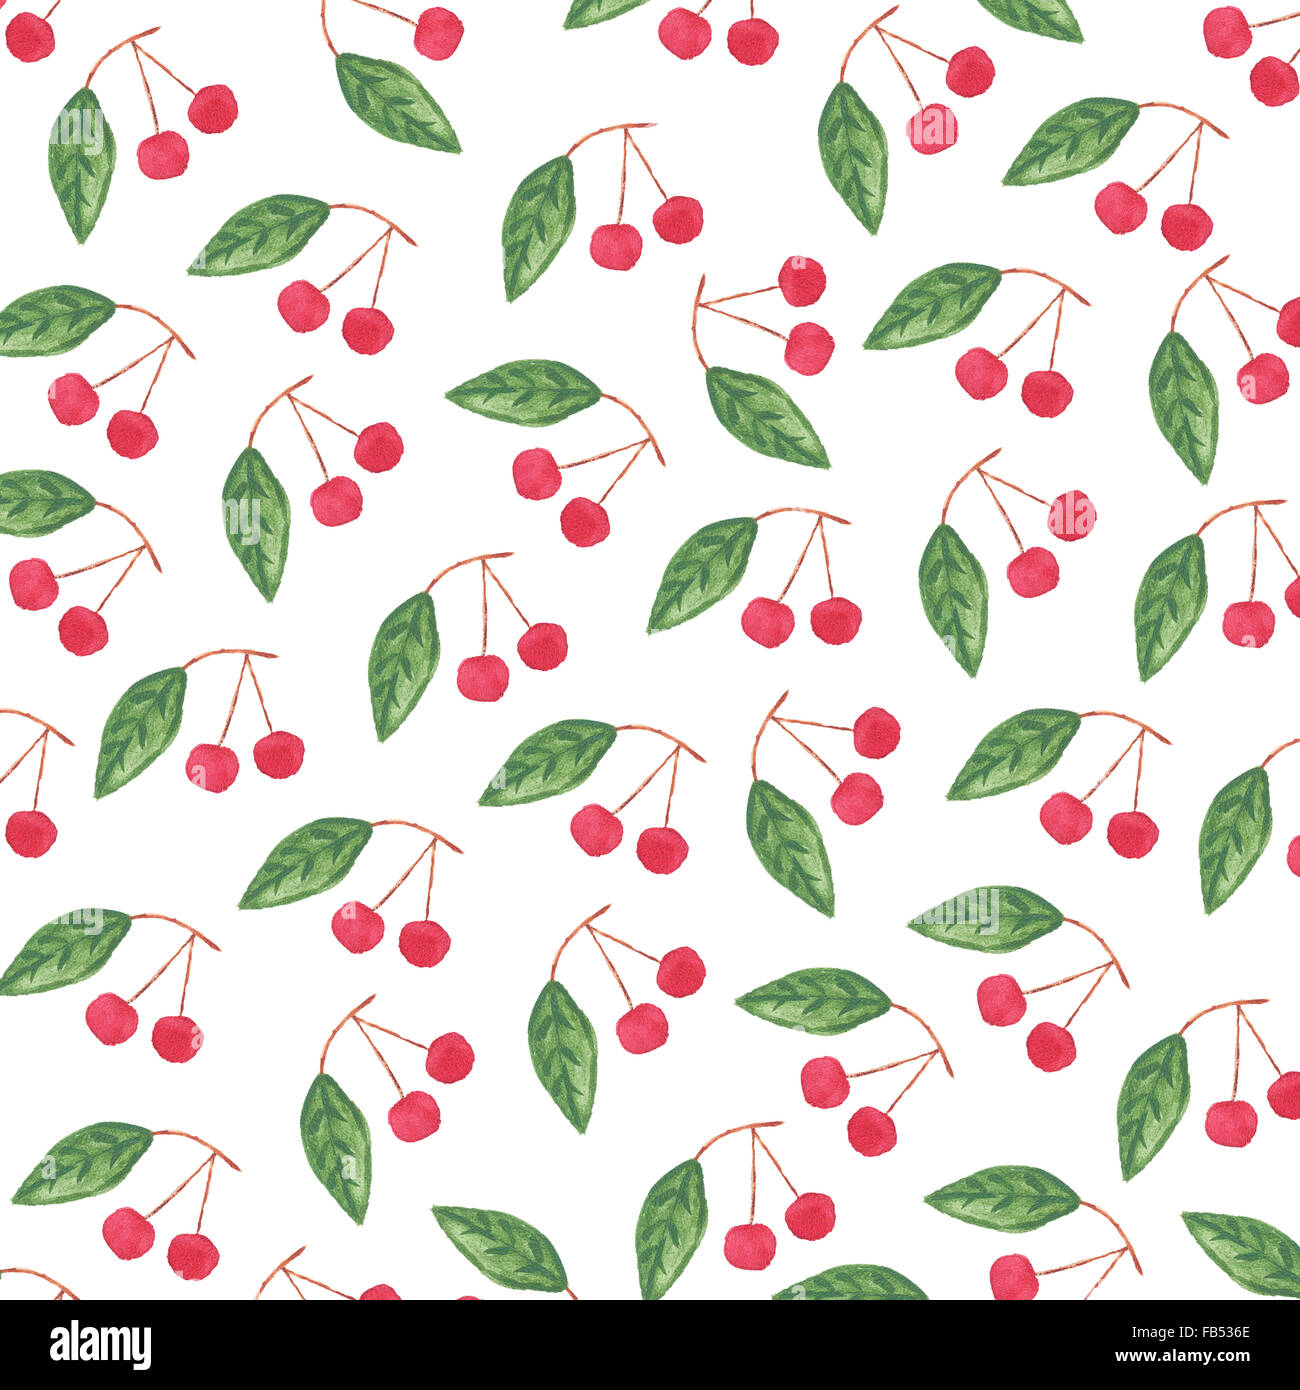 Aquarell Muster mit Kirschen und Blätter. Illustration für Papier oder Stoff Designs isoliert auf weißem Hintergrund. Stockfoto